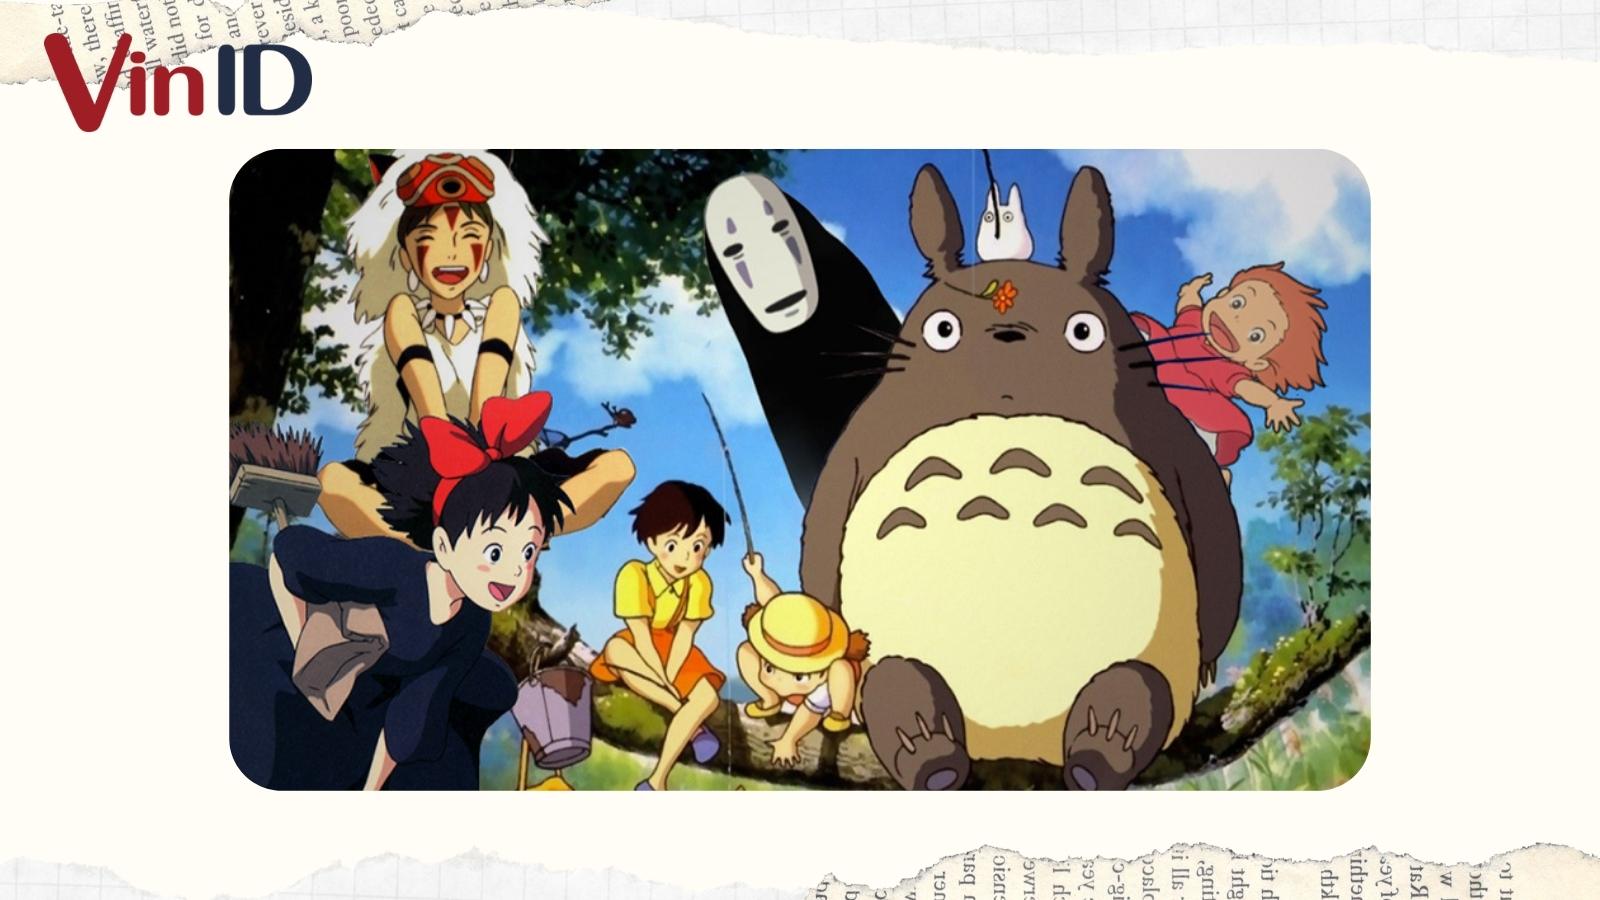 24 phim hoạt hình Ghibli theo thứ tự công chiếu [Tổng hợp đầy đủ]